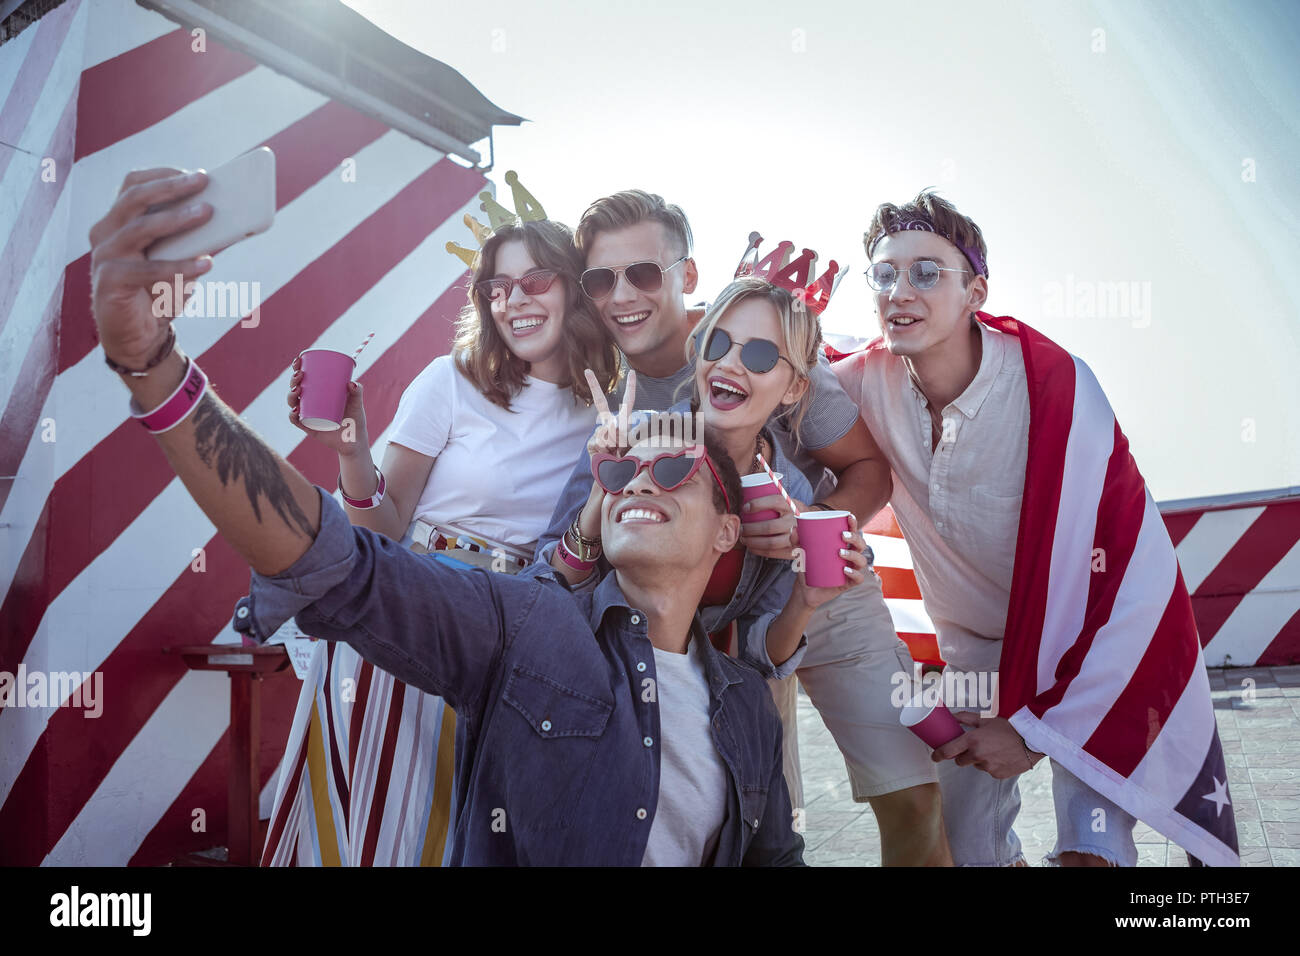 Joyful young people posing on selfie camera Stock Photo